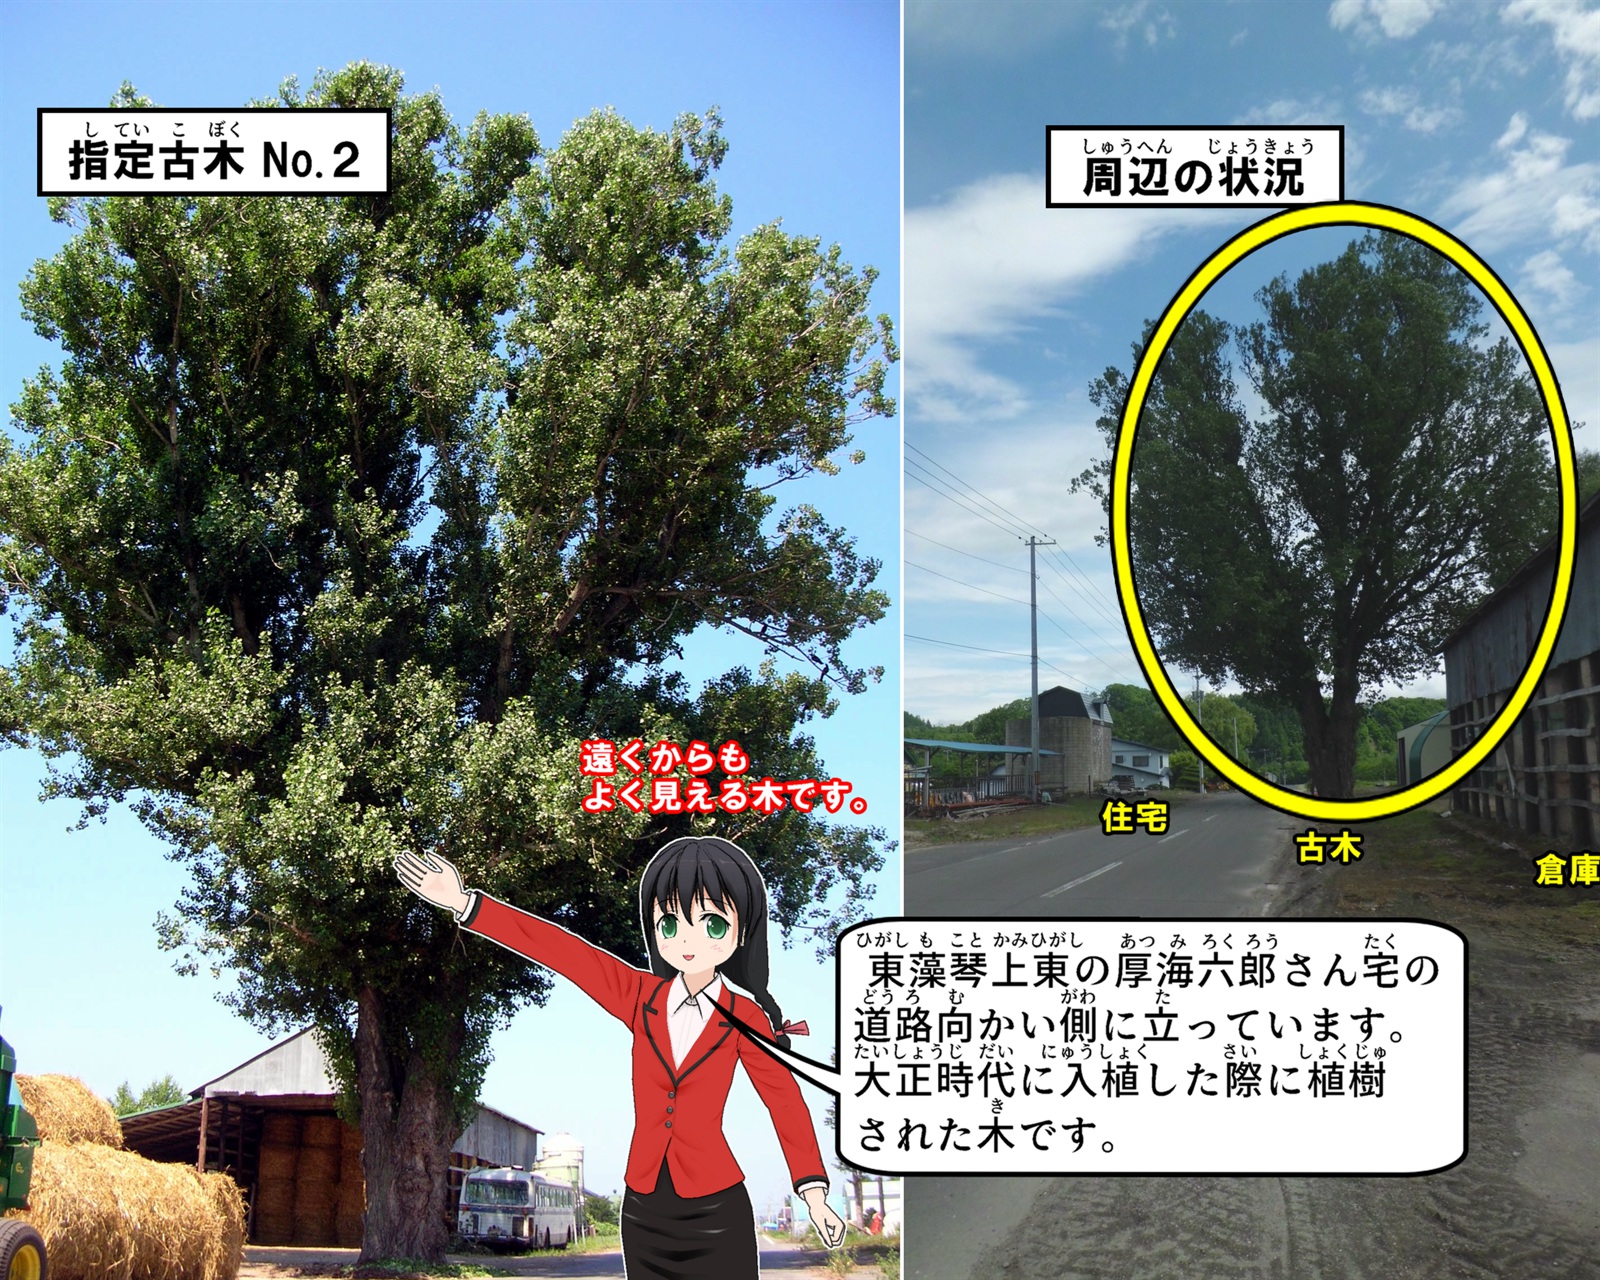 東藻琴上東の厚海六郎さん宅の道路向かい側に立っているポプラの写真の説明をしているイラスト